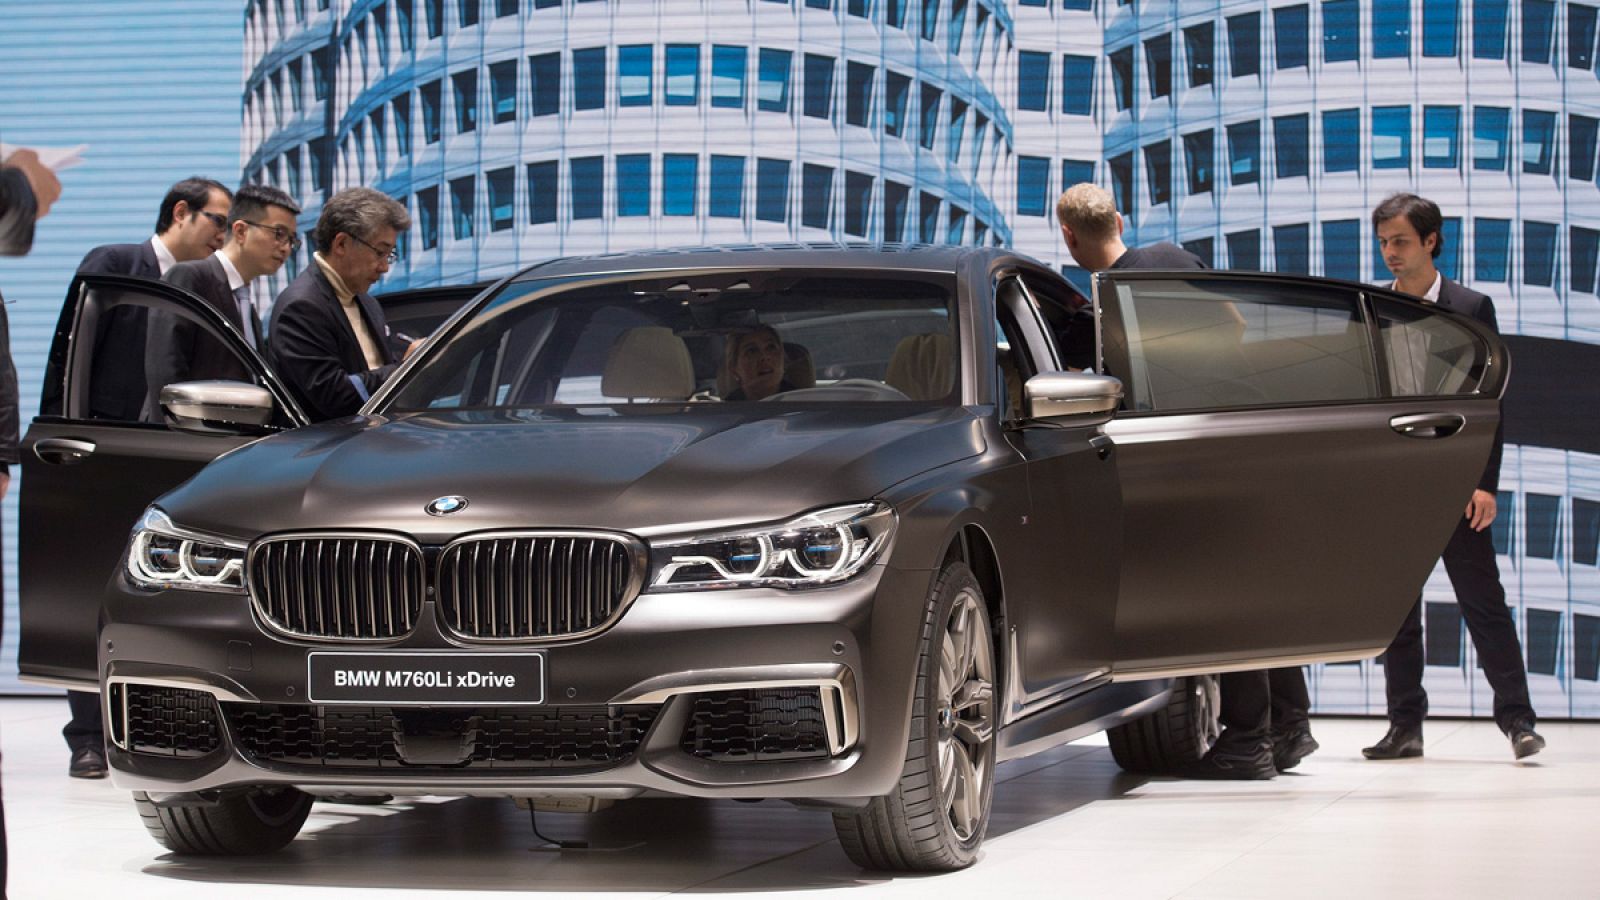 El nuevo BMW M760Li xDrive en el Salón del Automóvil de Ginebra, Suiza